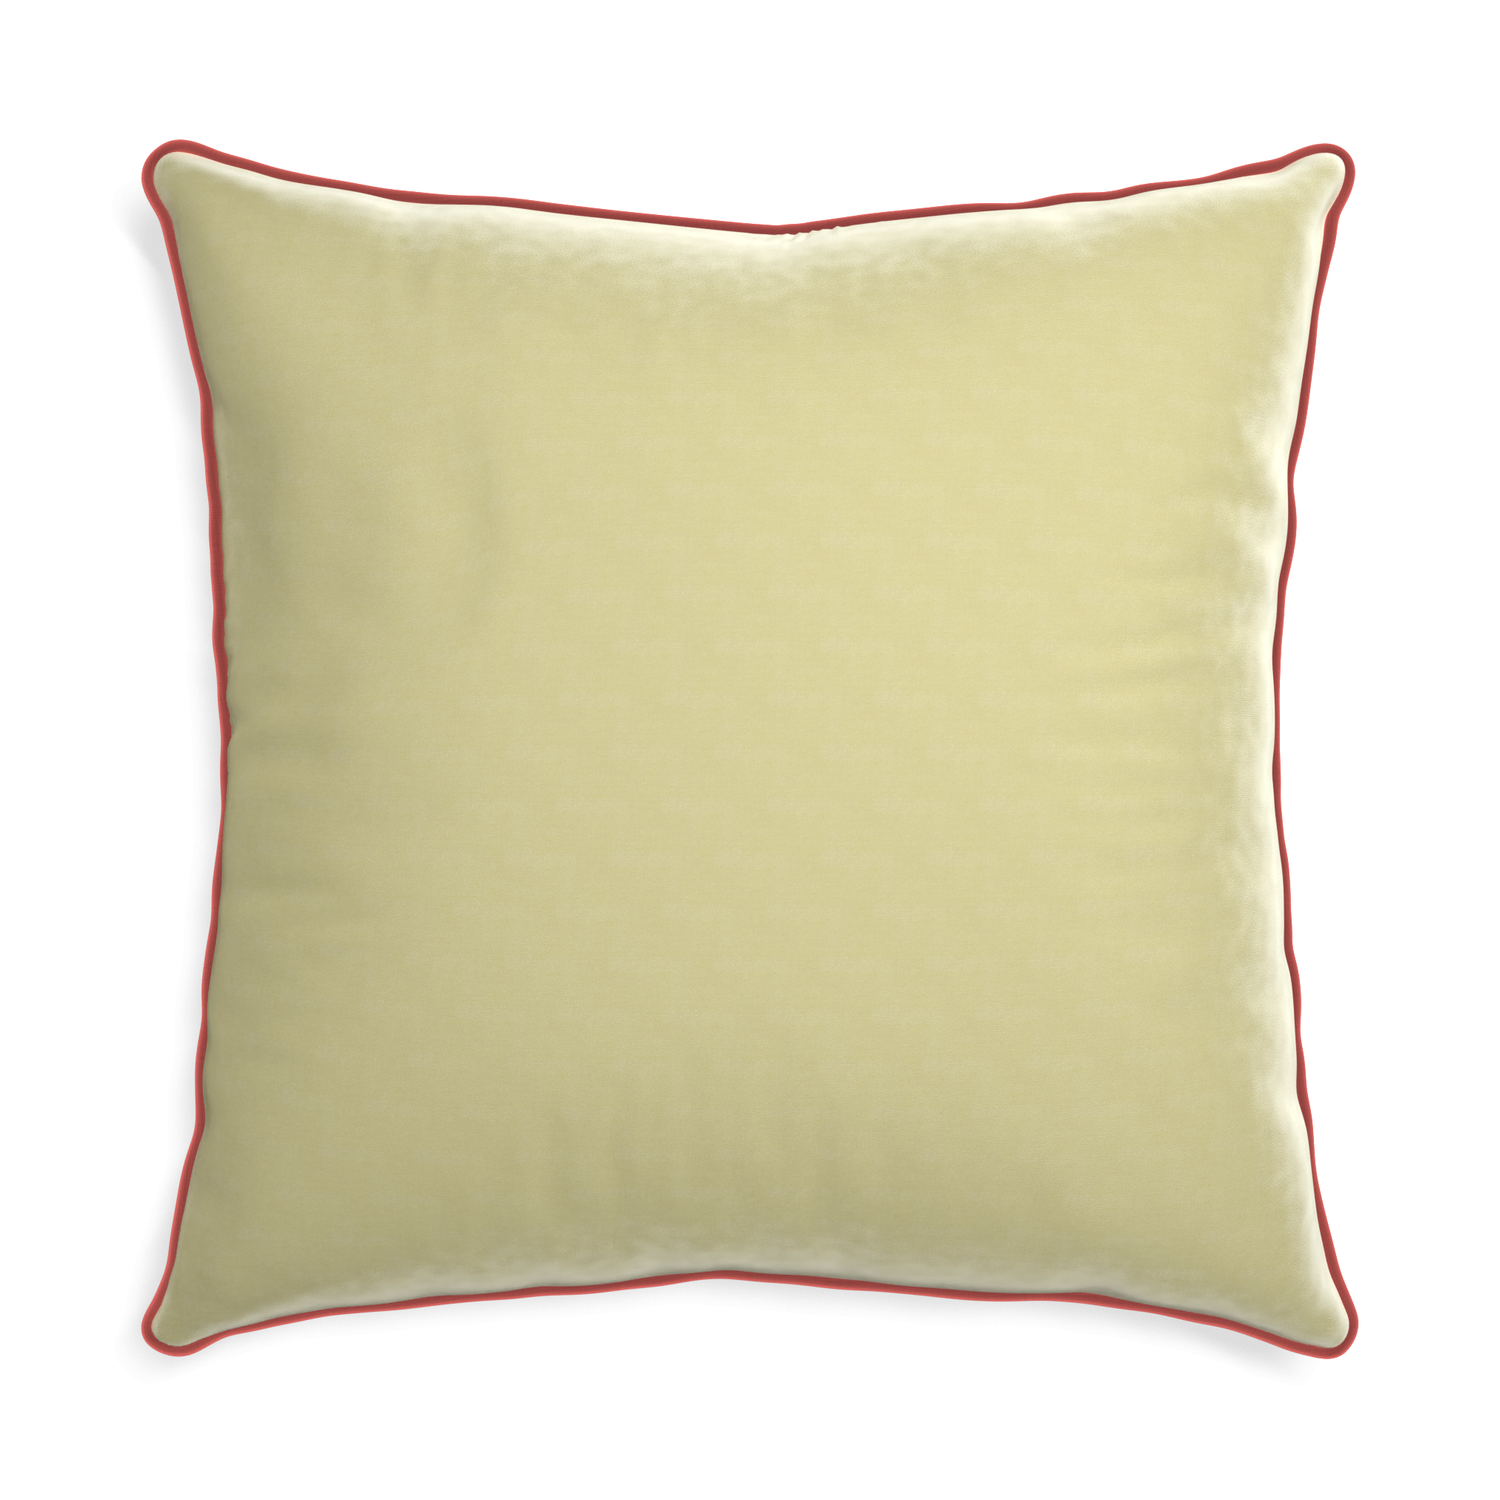 Euro-sham pear velvet custom pillow with c piping on white background